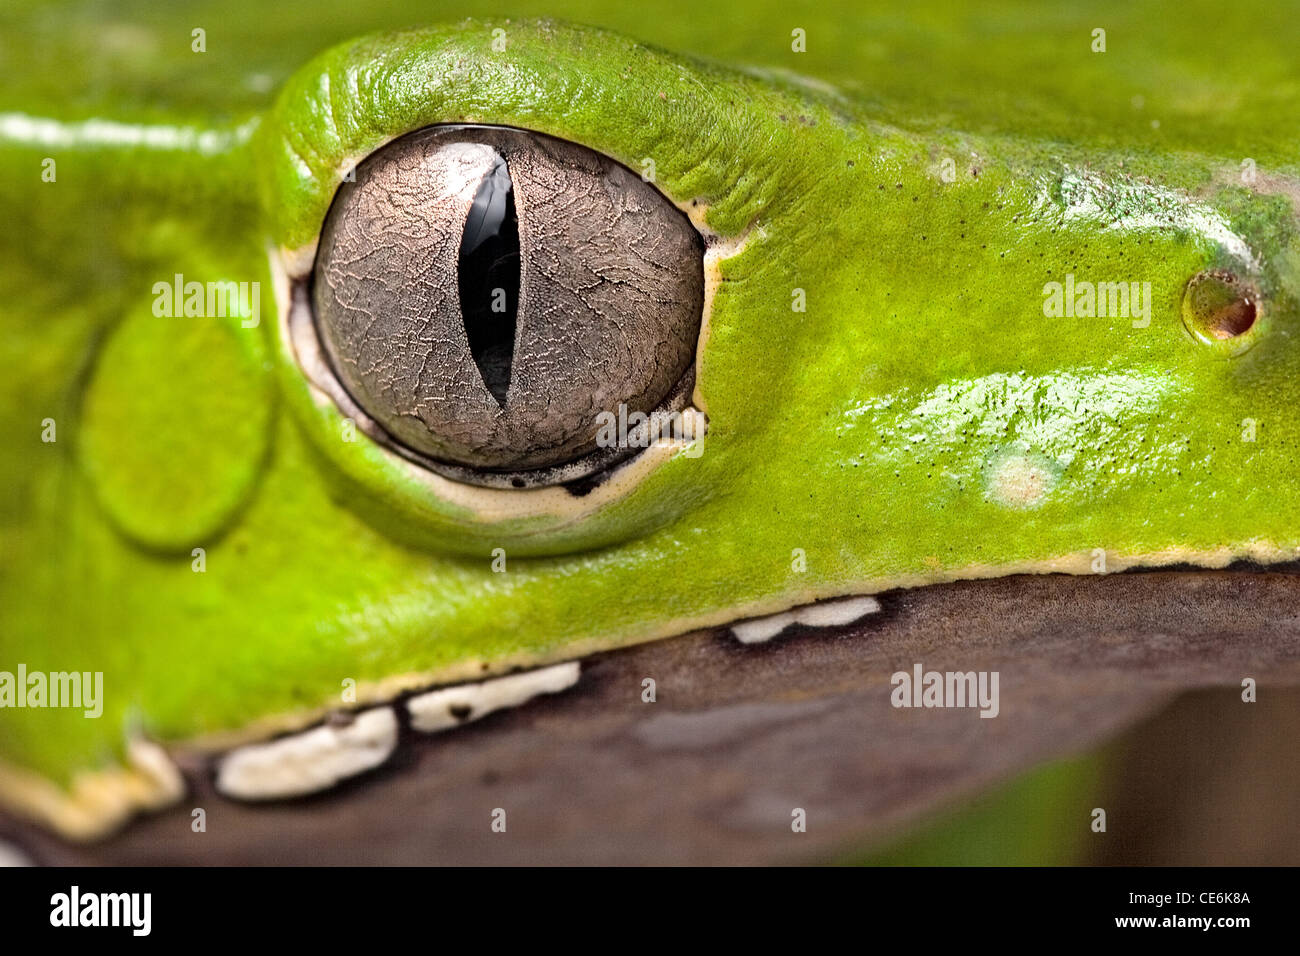 Détail de l'œil animal amphibien grenouille d'arbre vertical tête élève bel animal détail d'iris Phyllomedusa bicolor Banque D'Images